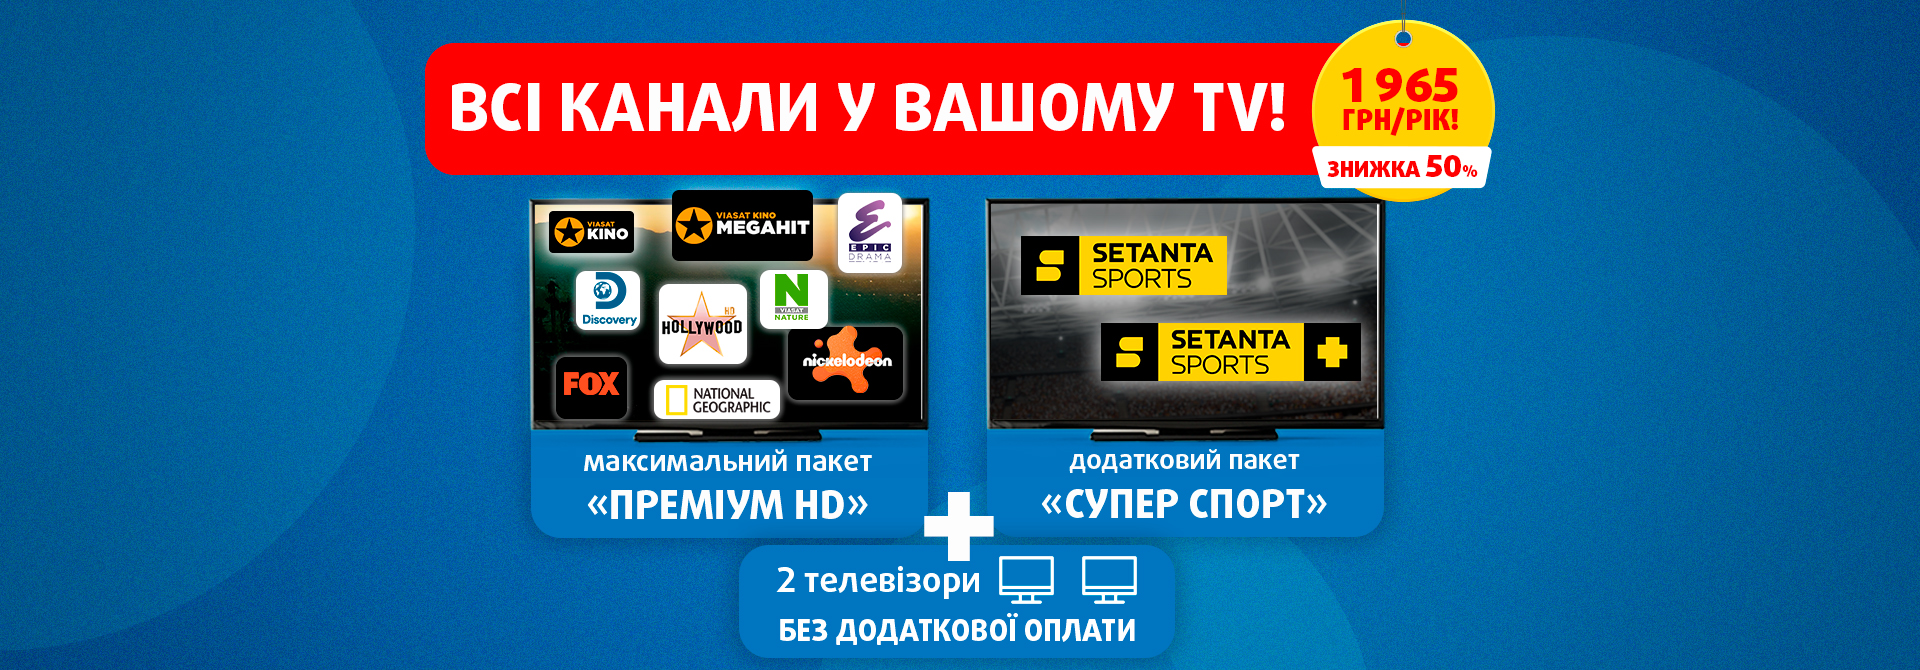 Всі канали Viasat у пропозиції «Все включено» на цілий рік!